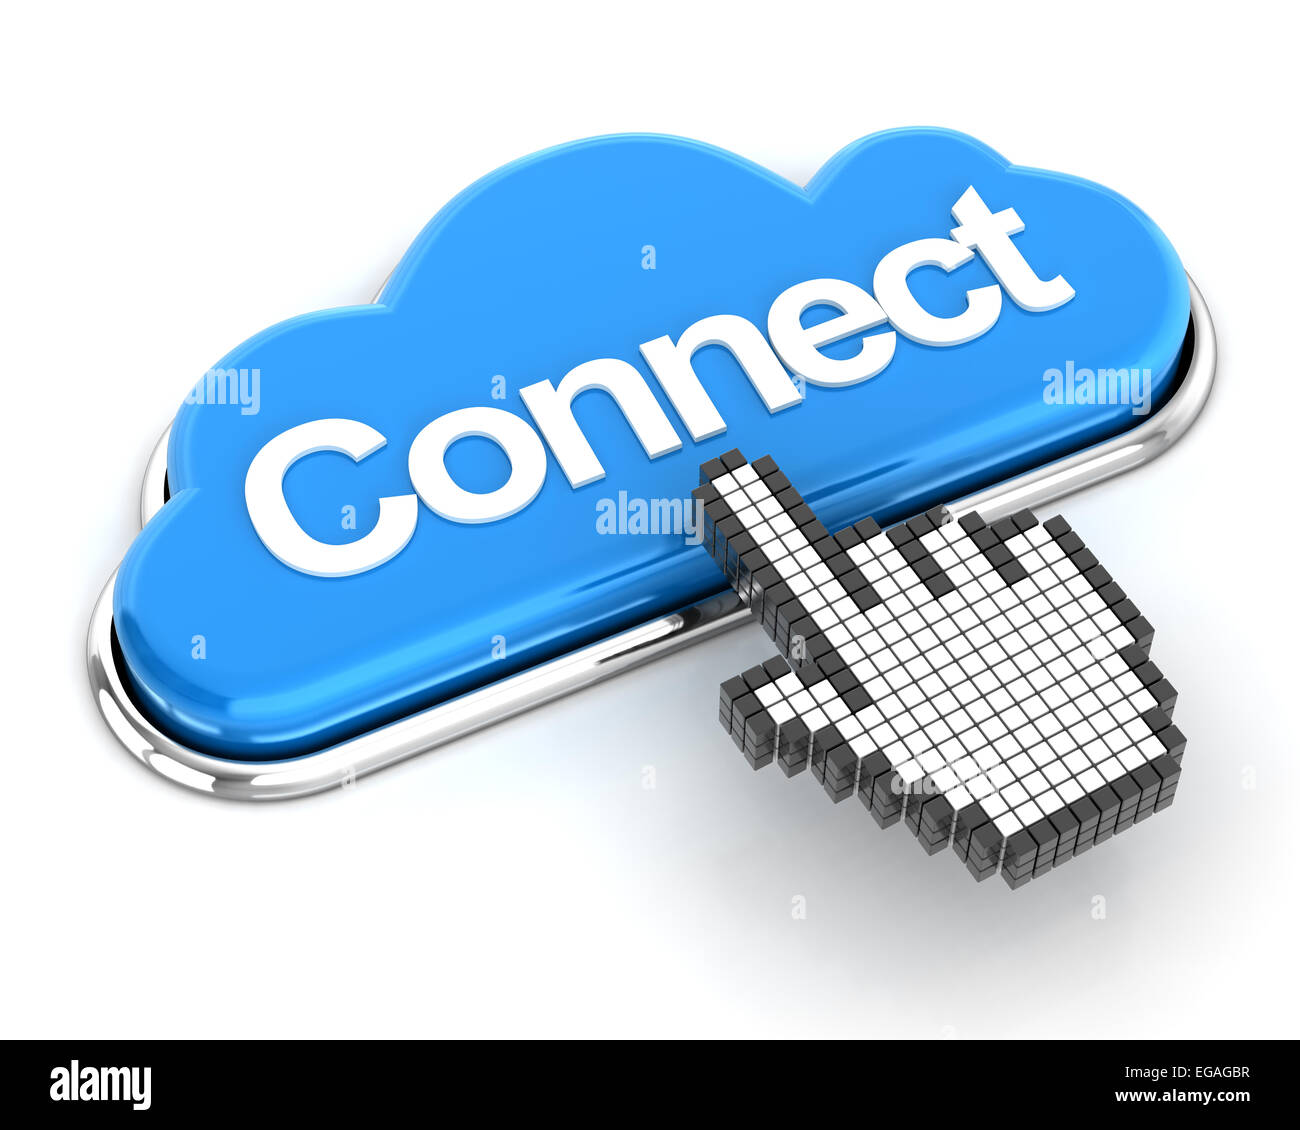 El cursor de mano al hacer clic en un botón de conexión en forma de nube, 3D Render Foto de stock